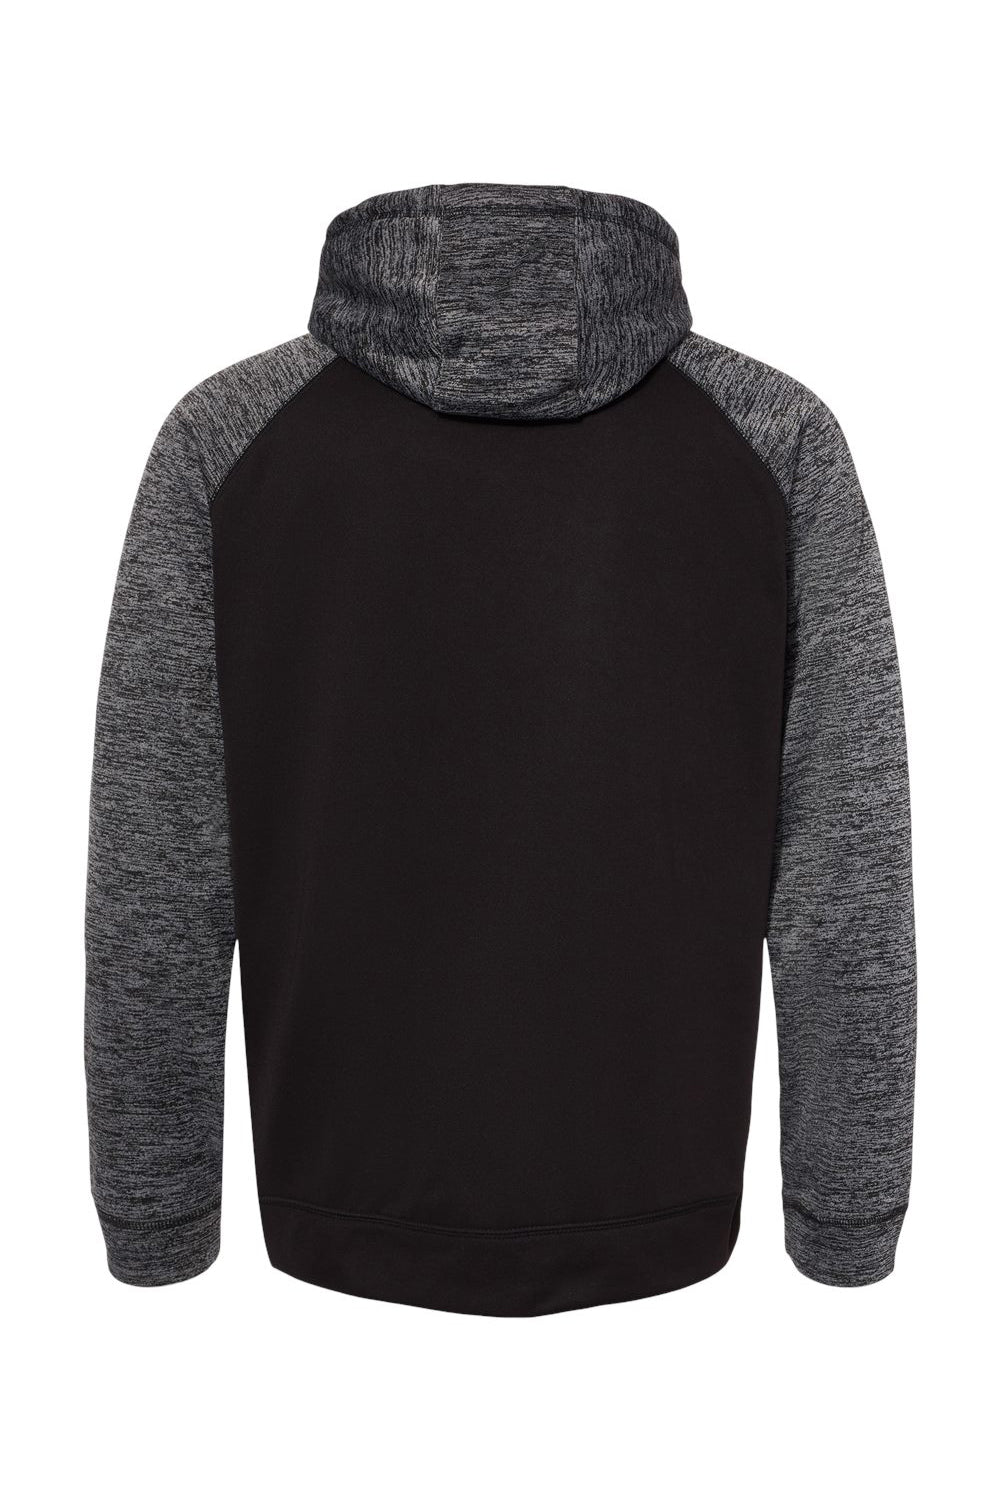 Burnside 8670 Mens Performance Raglan Hooded Sweatshirt Hoodie Black/Heather Charcoal Grey Flat Back